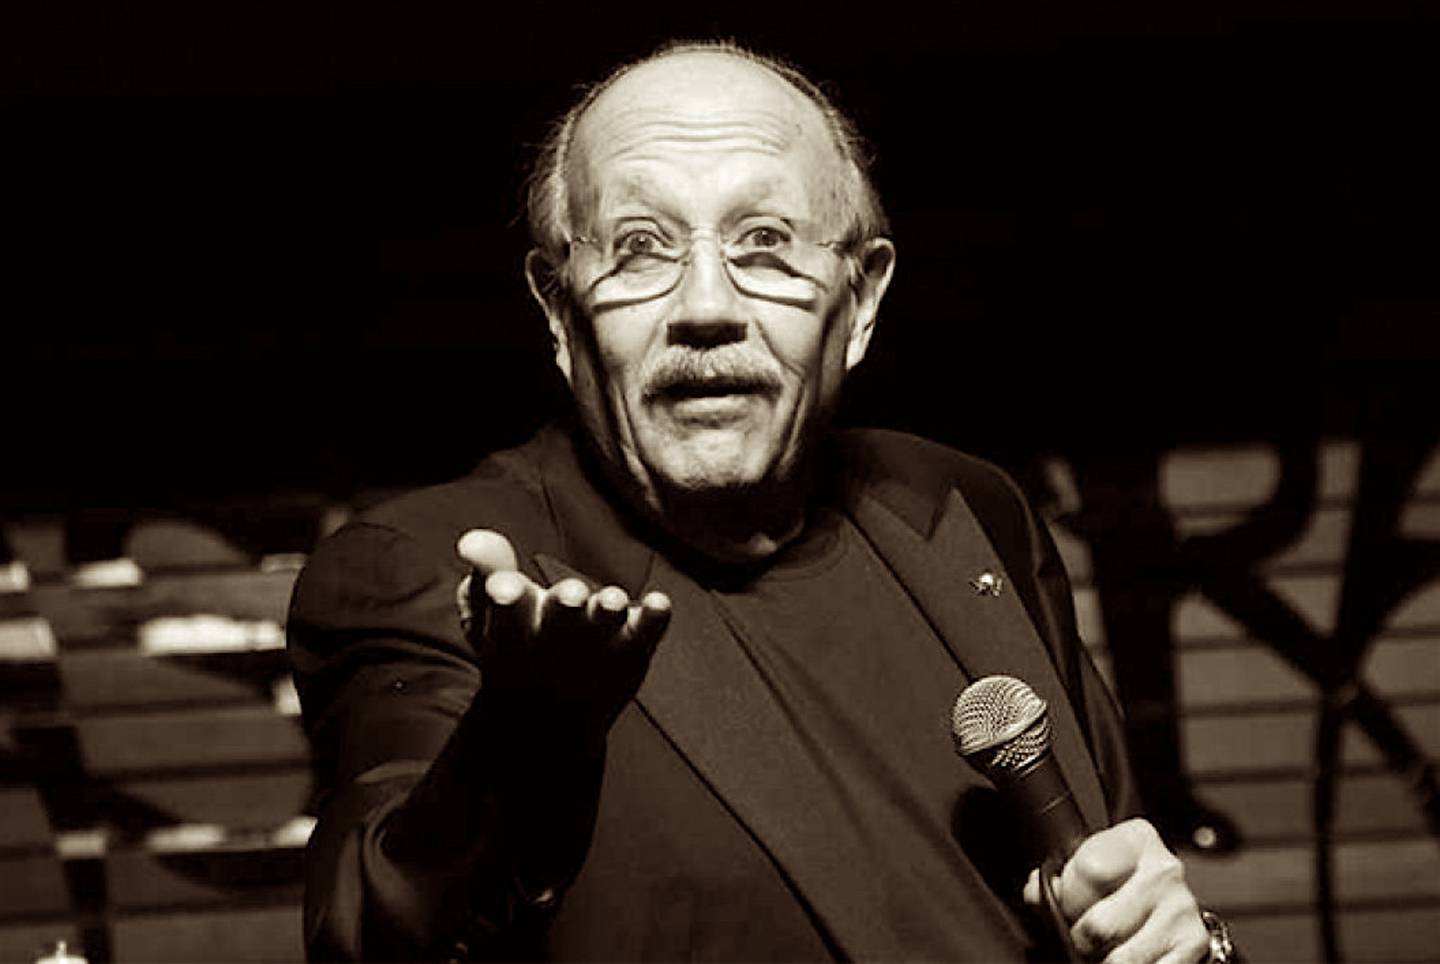 El comediante mexicano marcó una etapa importante del humor en México.